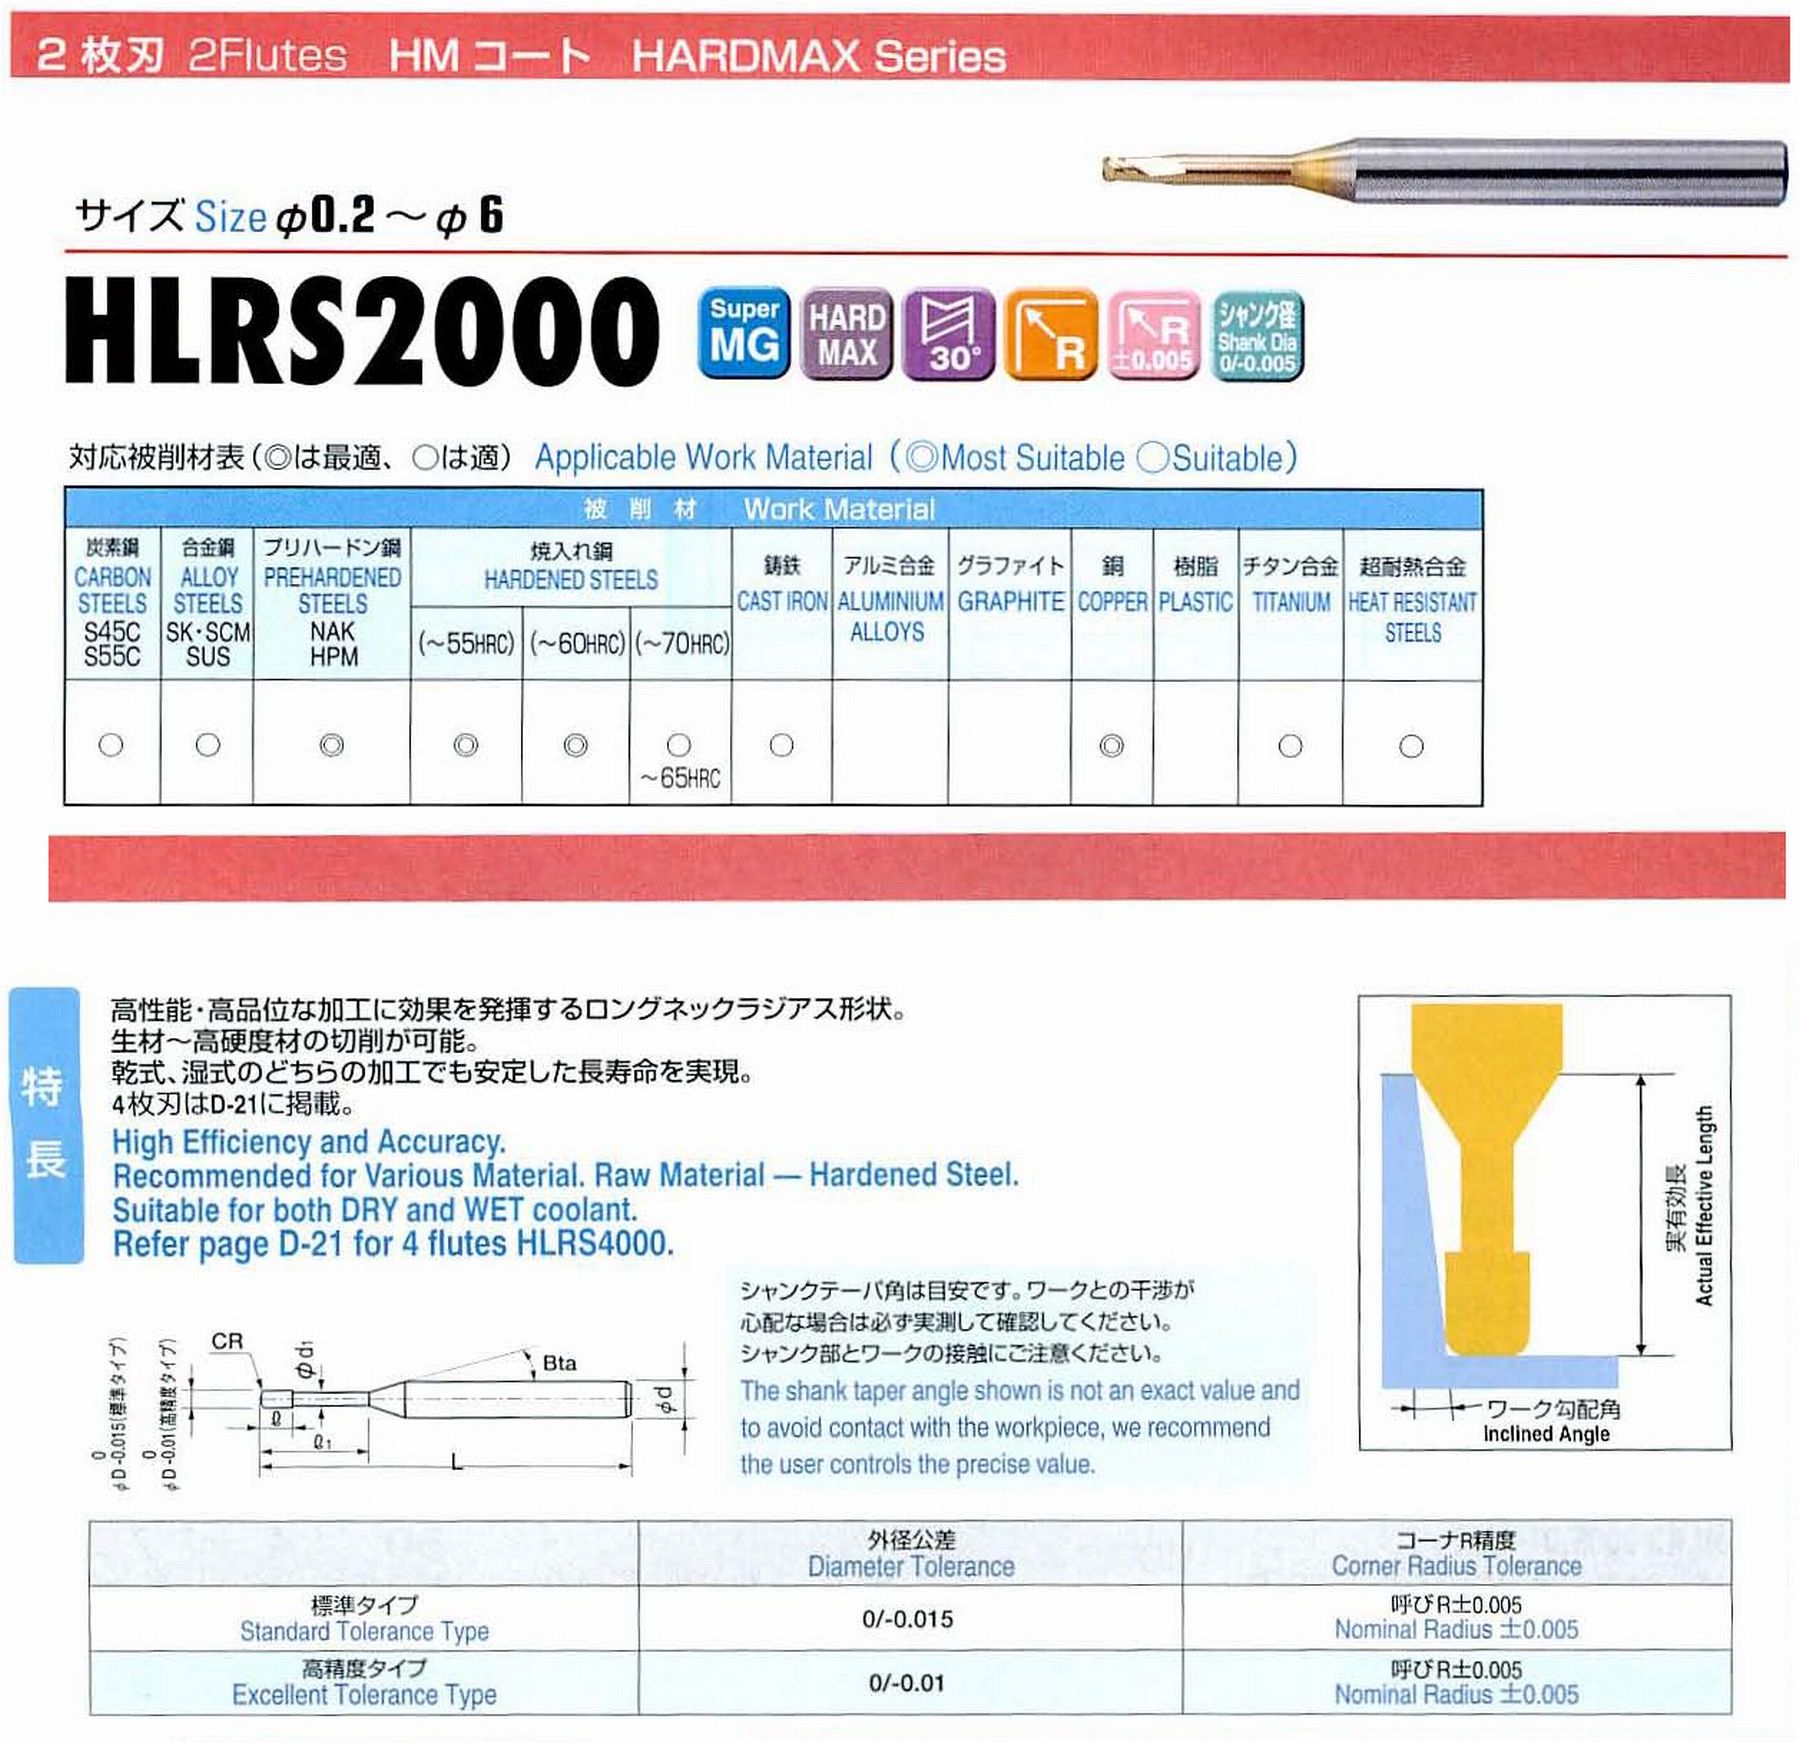 ユニオンツール 2枚刃 HLRS2006-01-040E 外径0.6 コーナ半径R0.1 有効長4 刃長0.6 首径0.58 シャンクテーパ角16° 全長50 シャンク径4